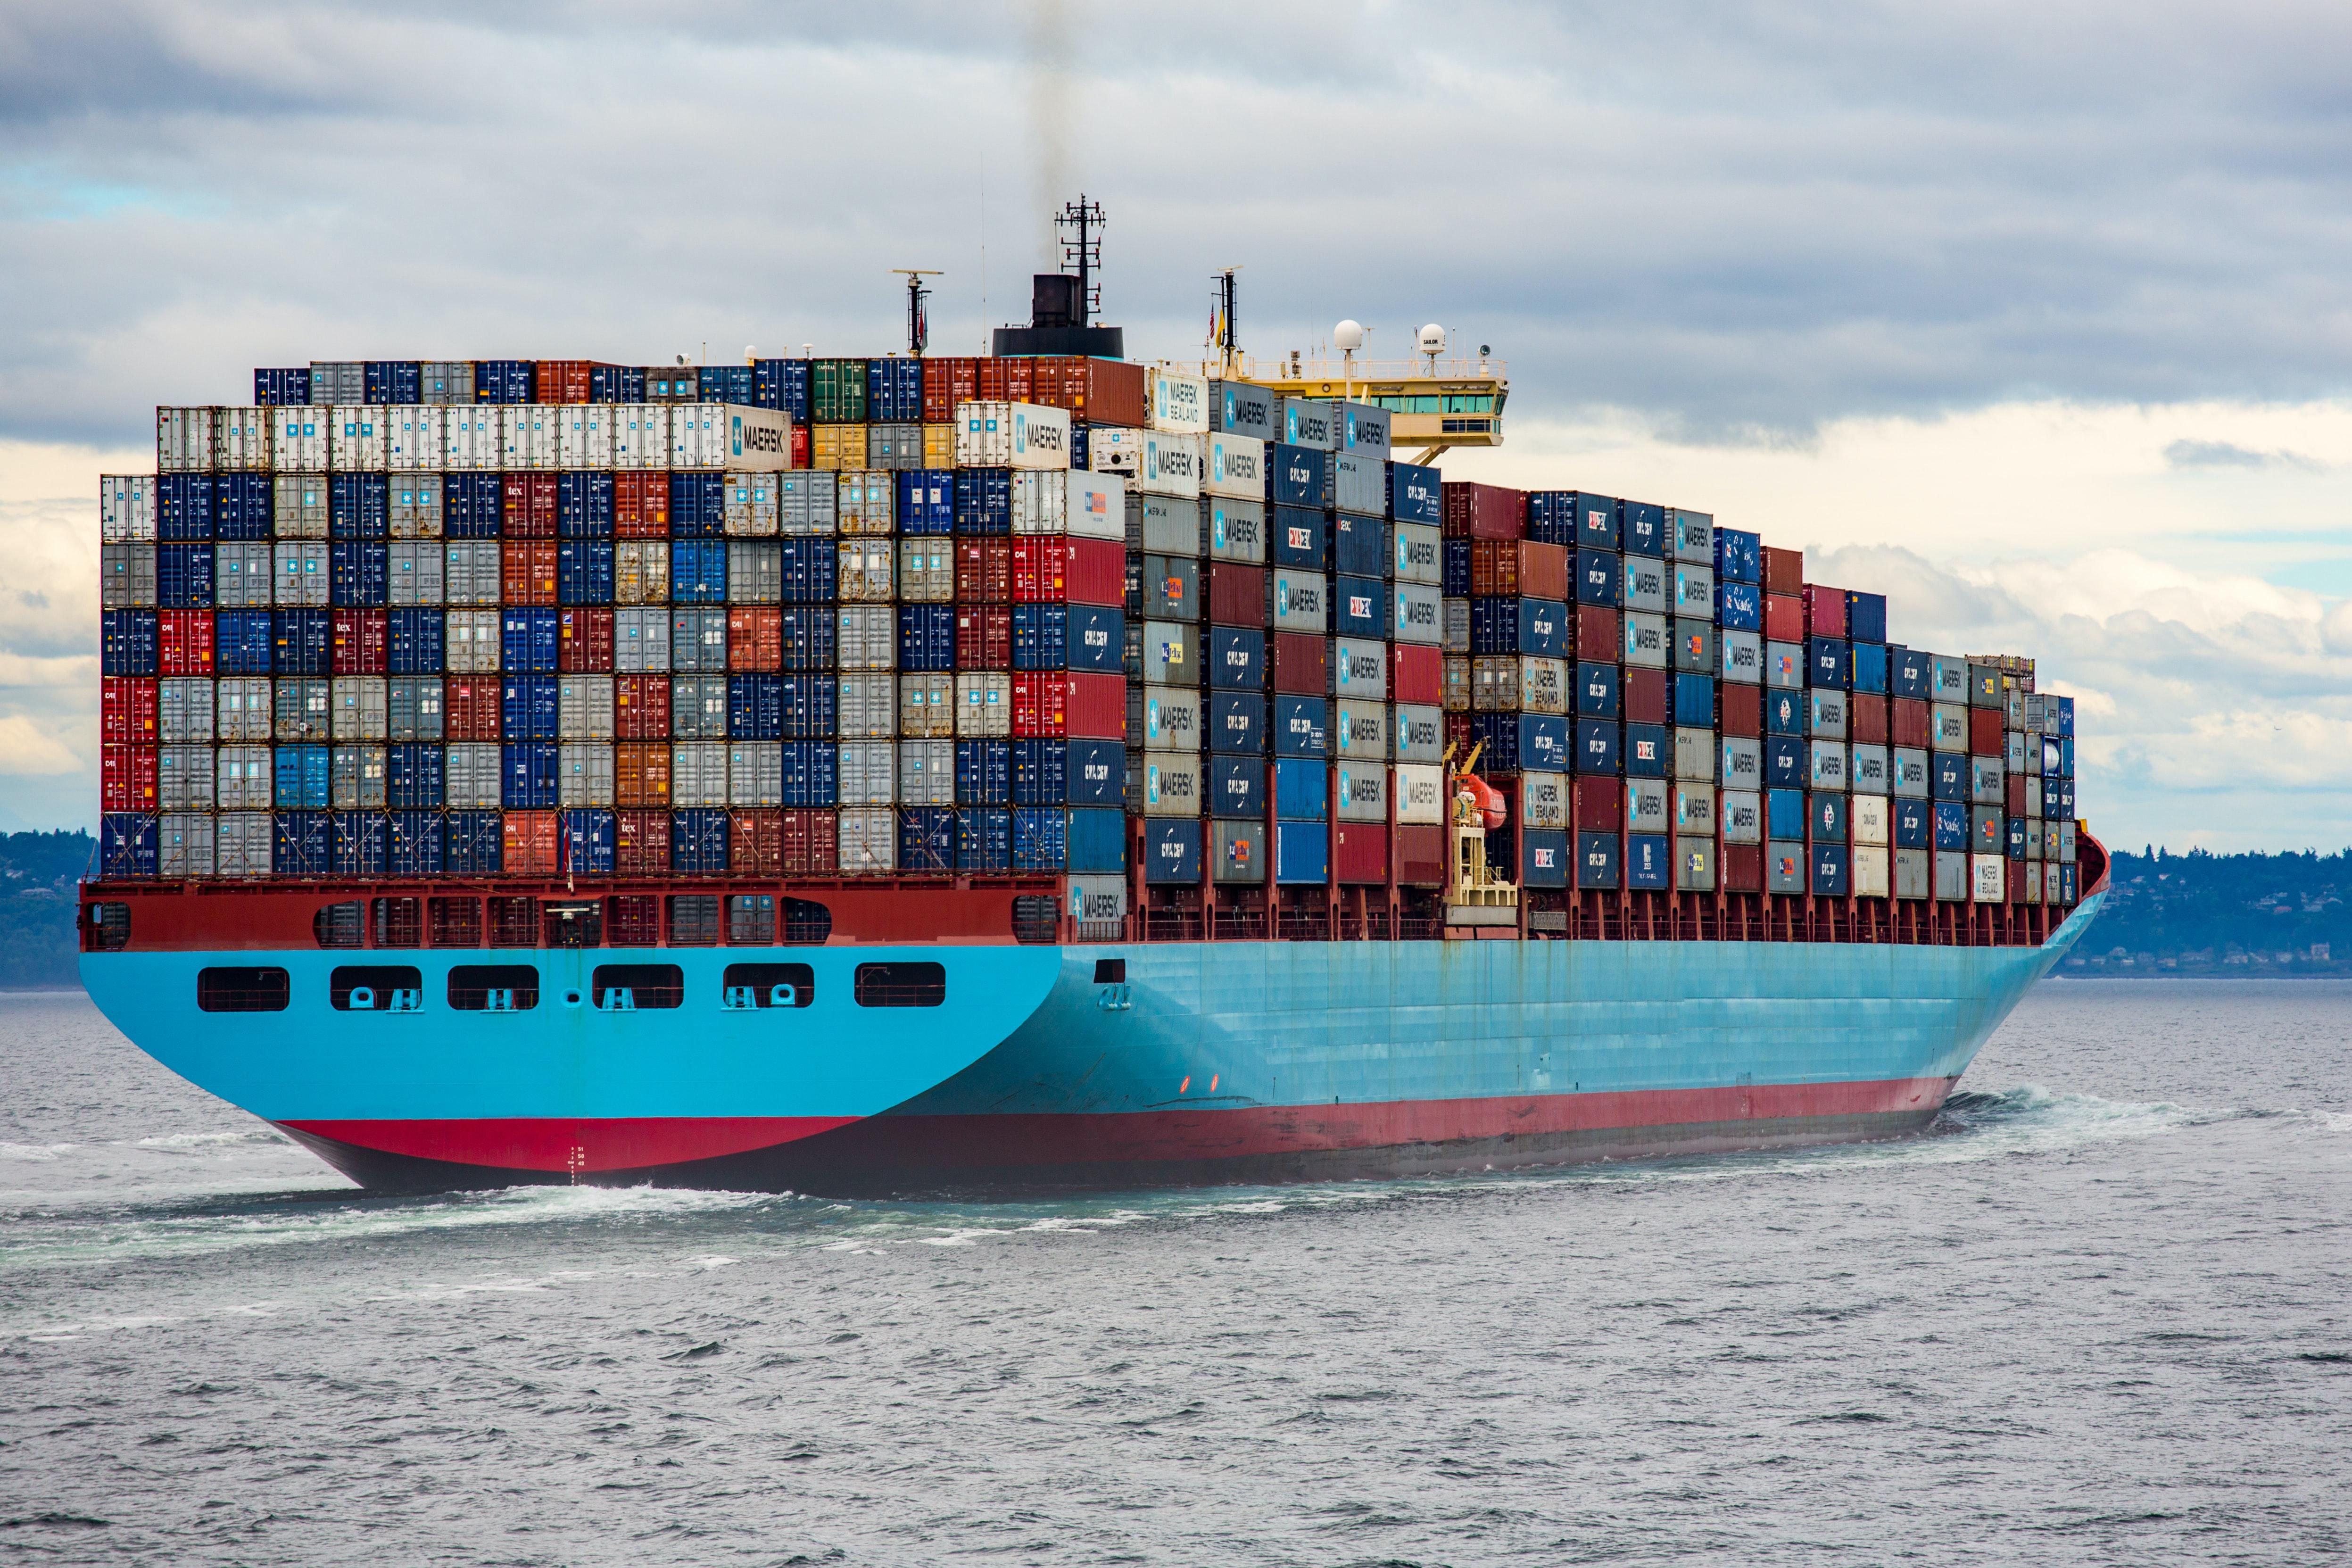 A Maersk egyik konténerhajója konténerekkel megpakolva úszik a vízen az amerikai kikők felé